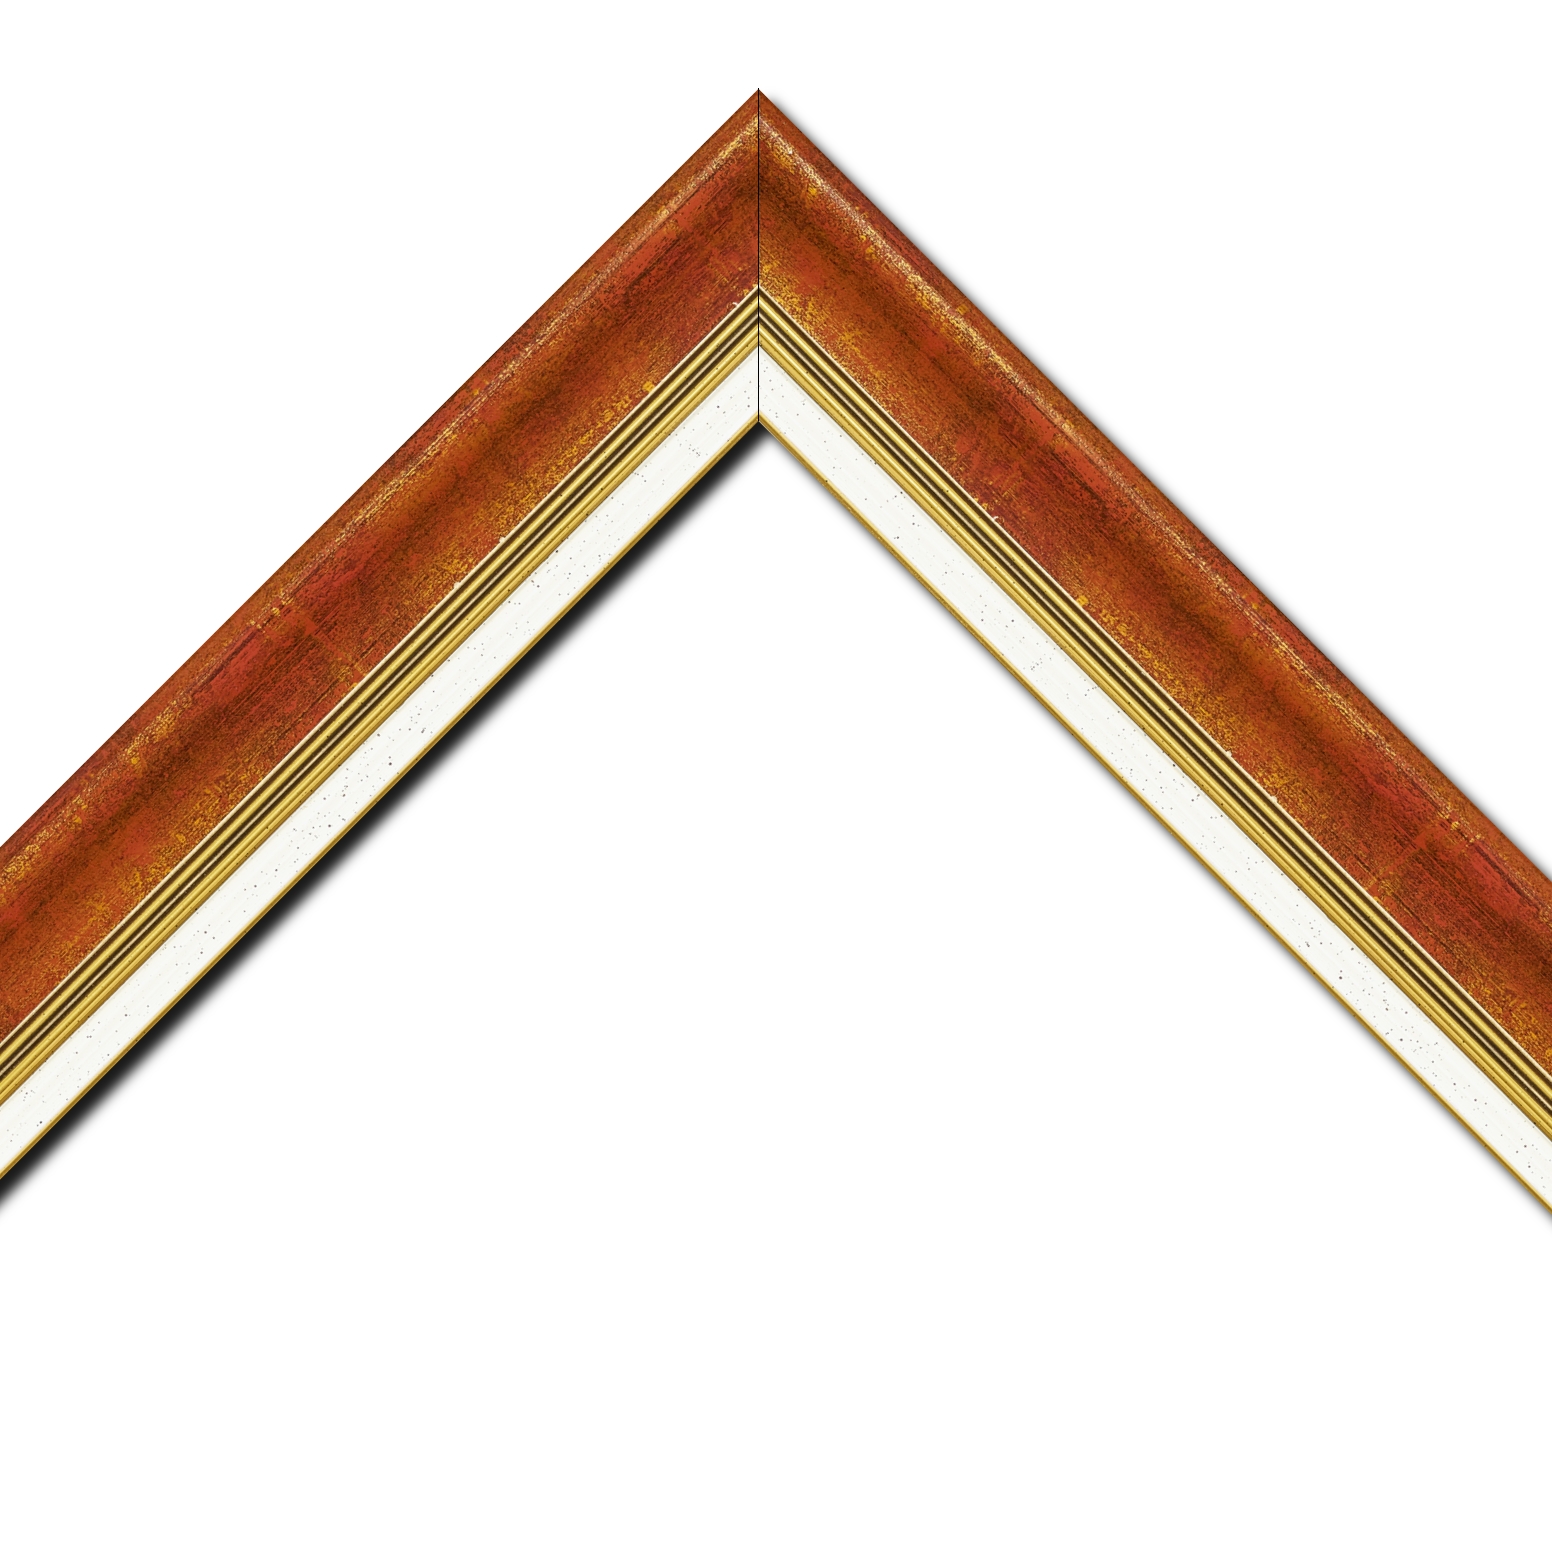 Baguette bois profil incurvé largeur 5.7cm de couleur bordeaux fond or marie louise blanche mouchetée filet or intégré